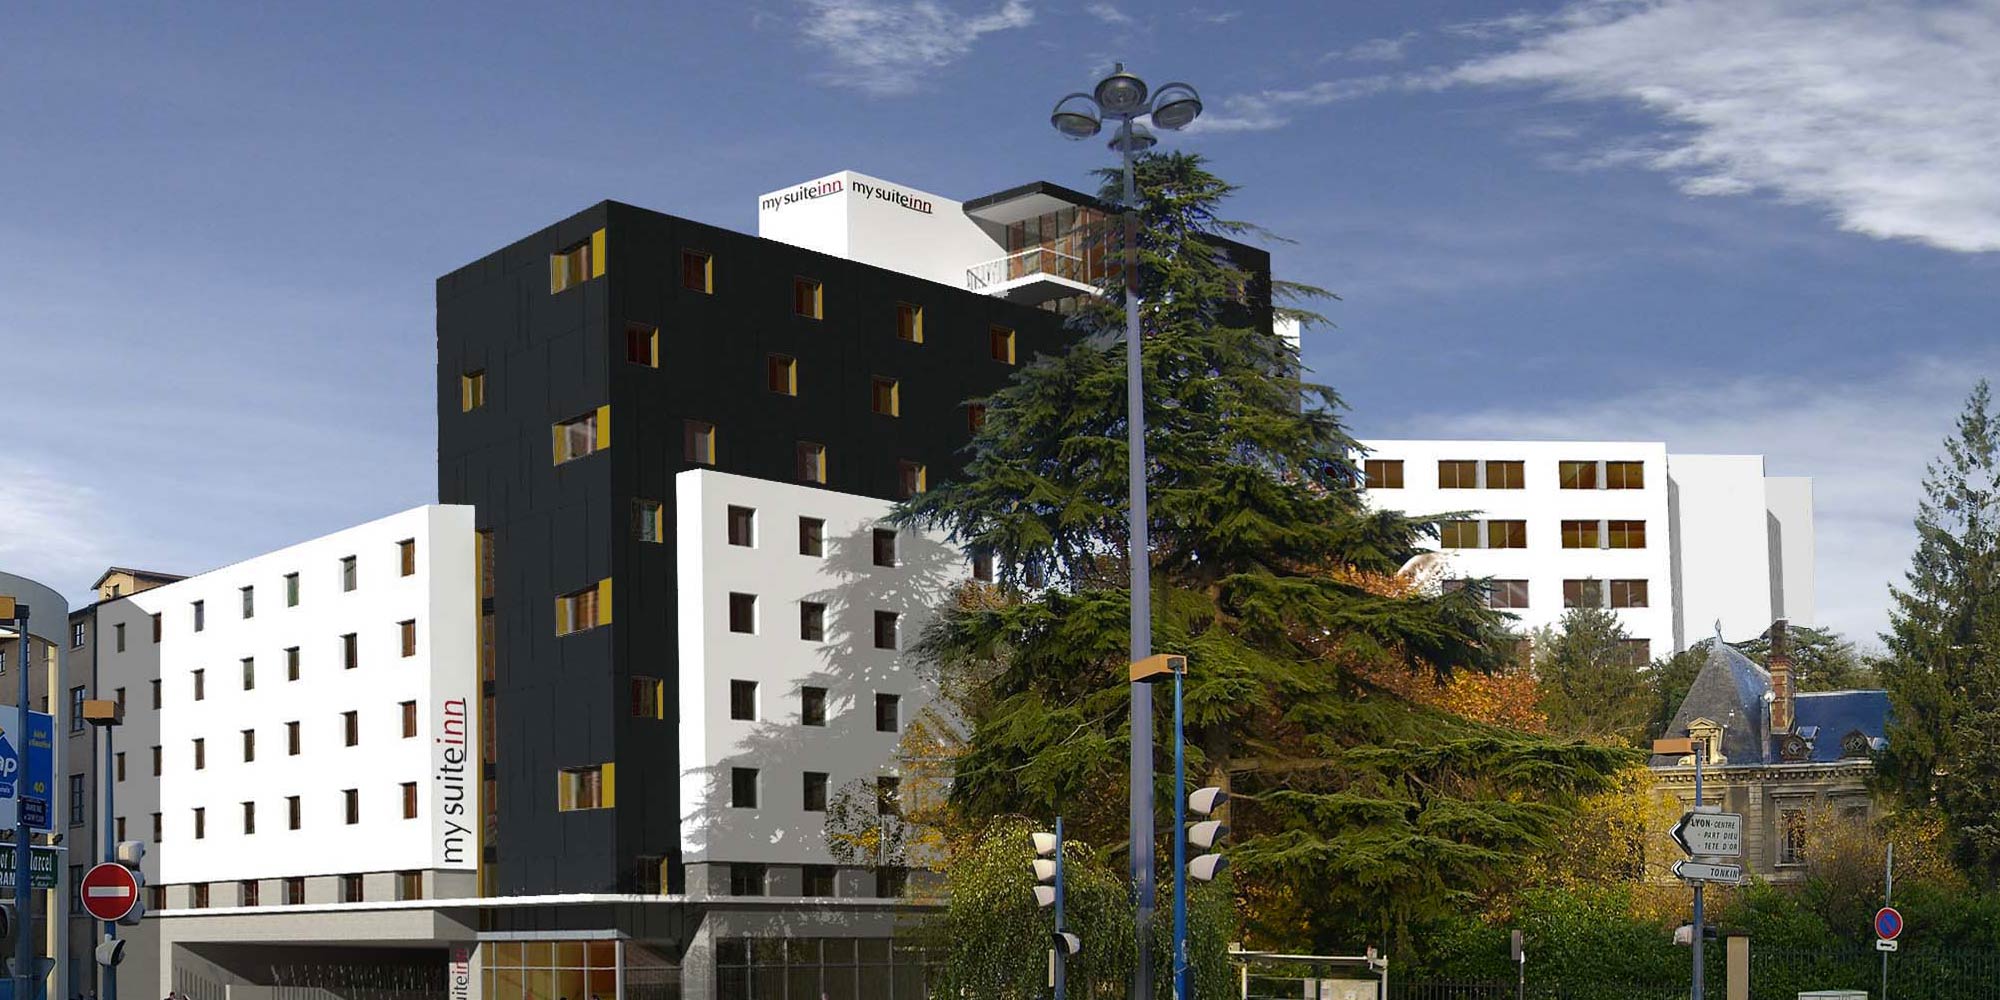 Plan 3D de l'appart-hôtel de Caluire-et-Cuire / Aw-eck : économiste de la construction